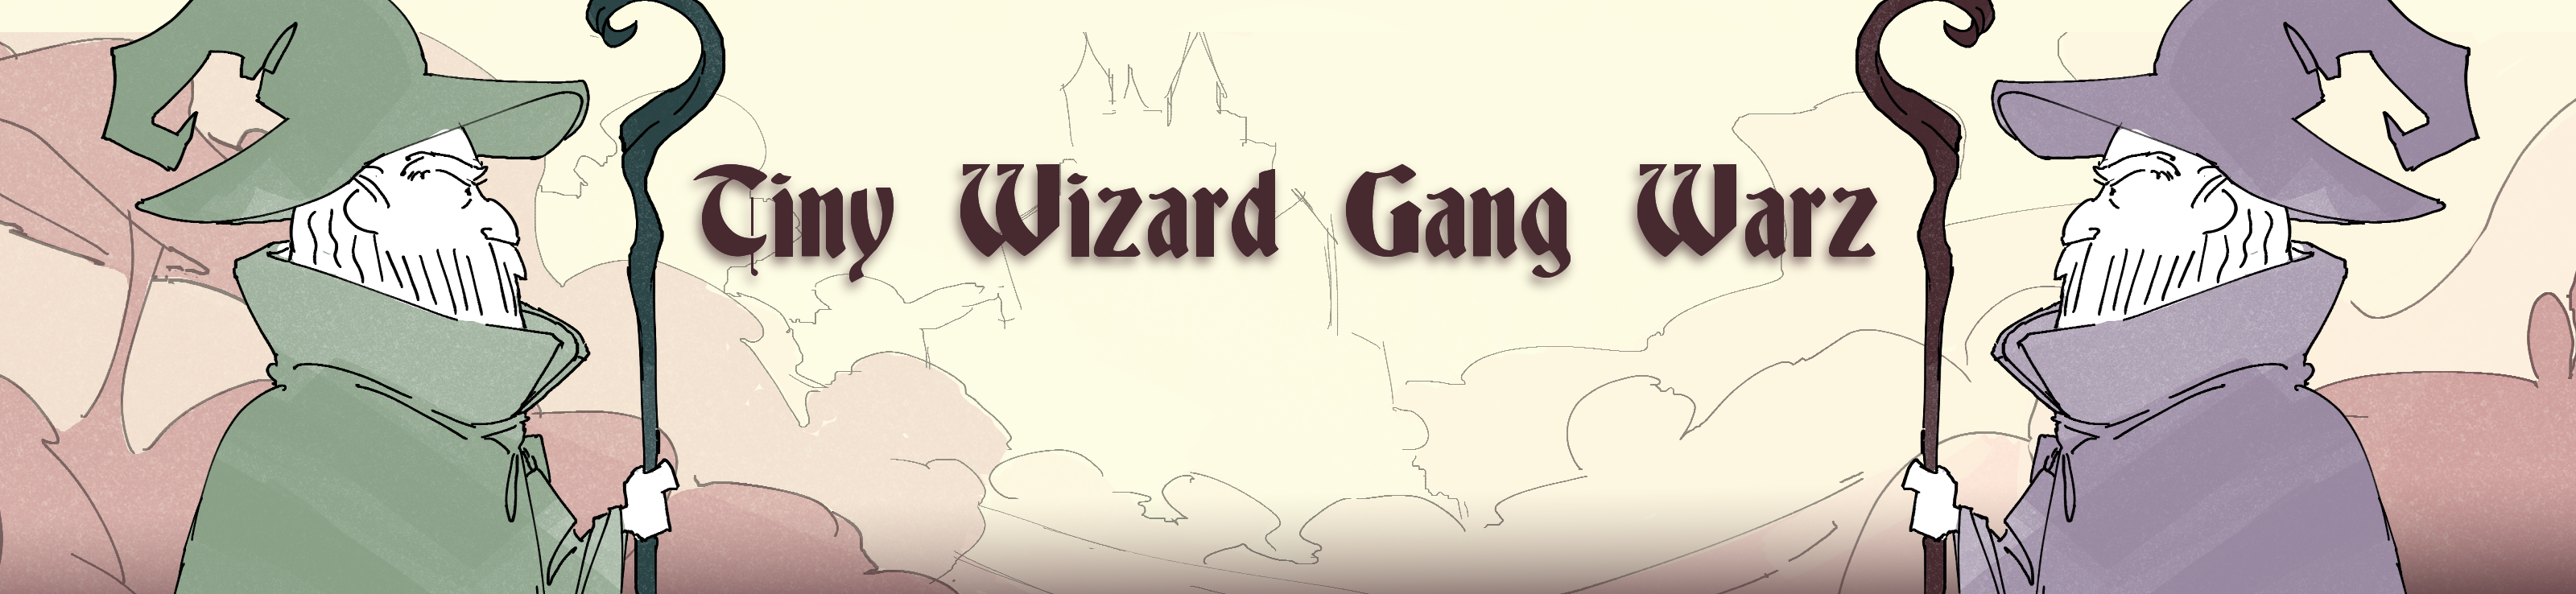 Tiny Wizard Gang Warz